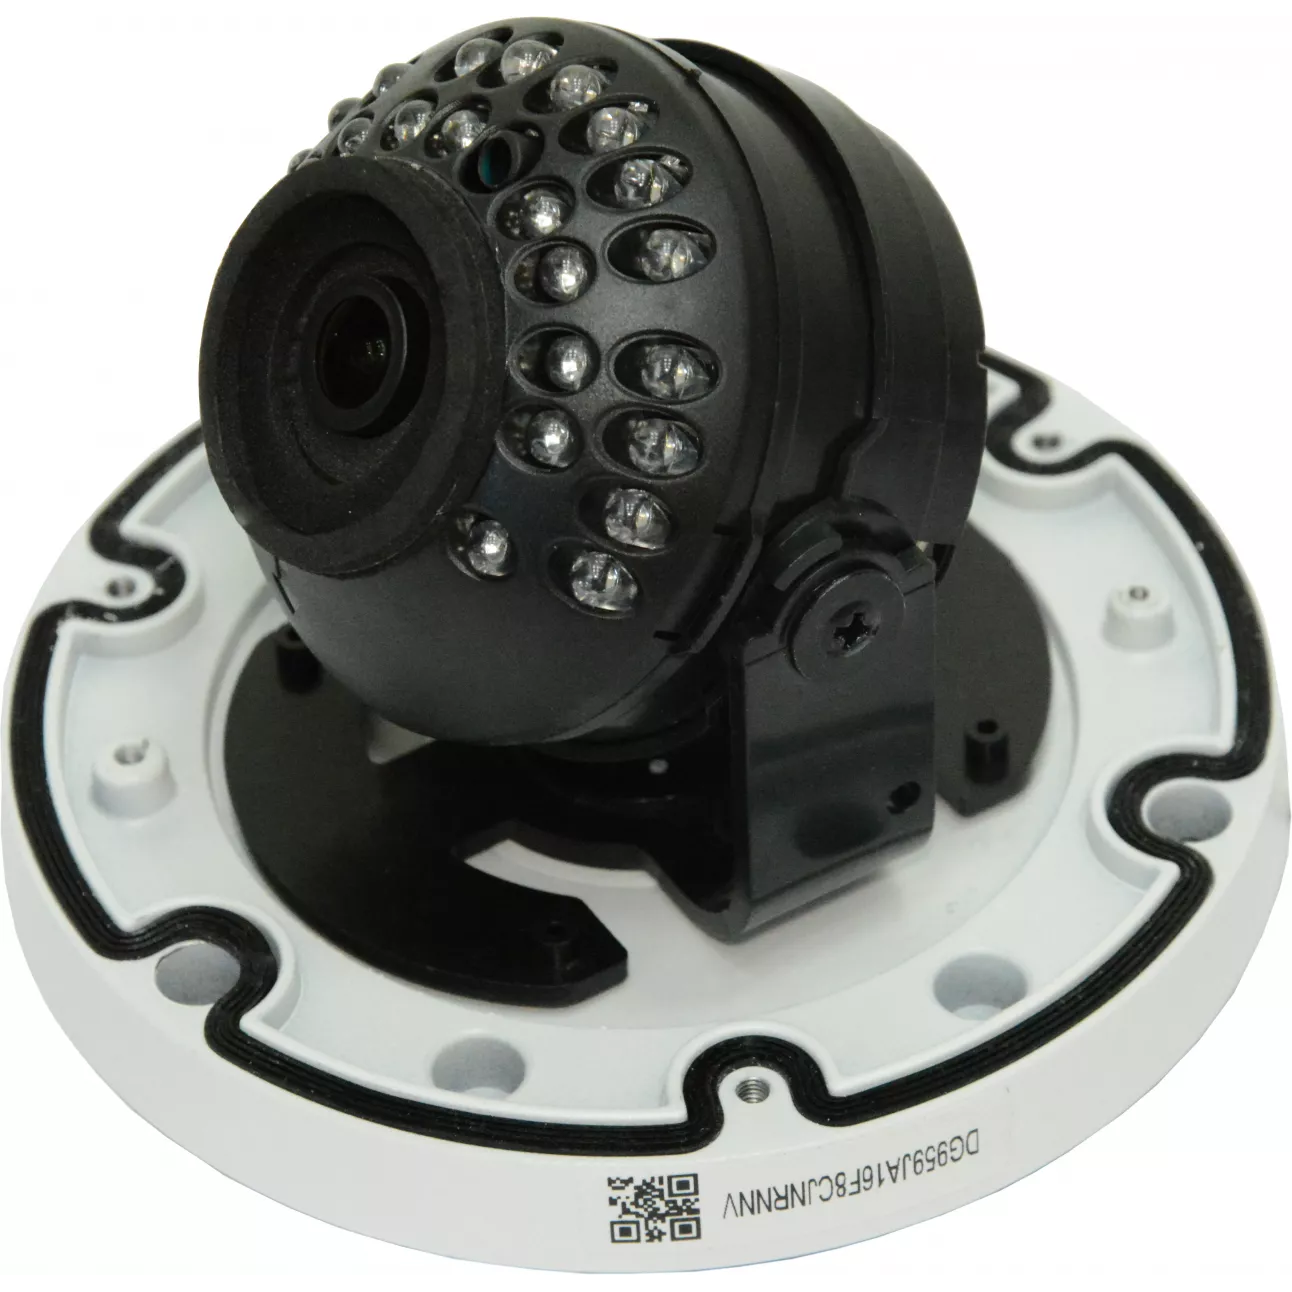 IP камера OMNY 404M PRO антивандальная купольная мини 1080p, c ИК подсветкой, 2.8мм,12В/PoE, EasyMic